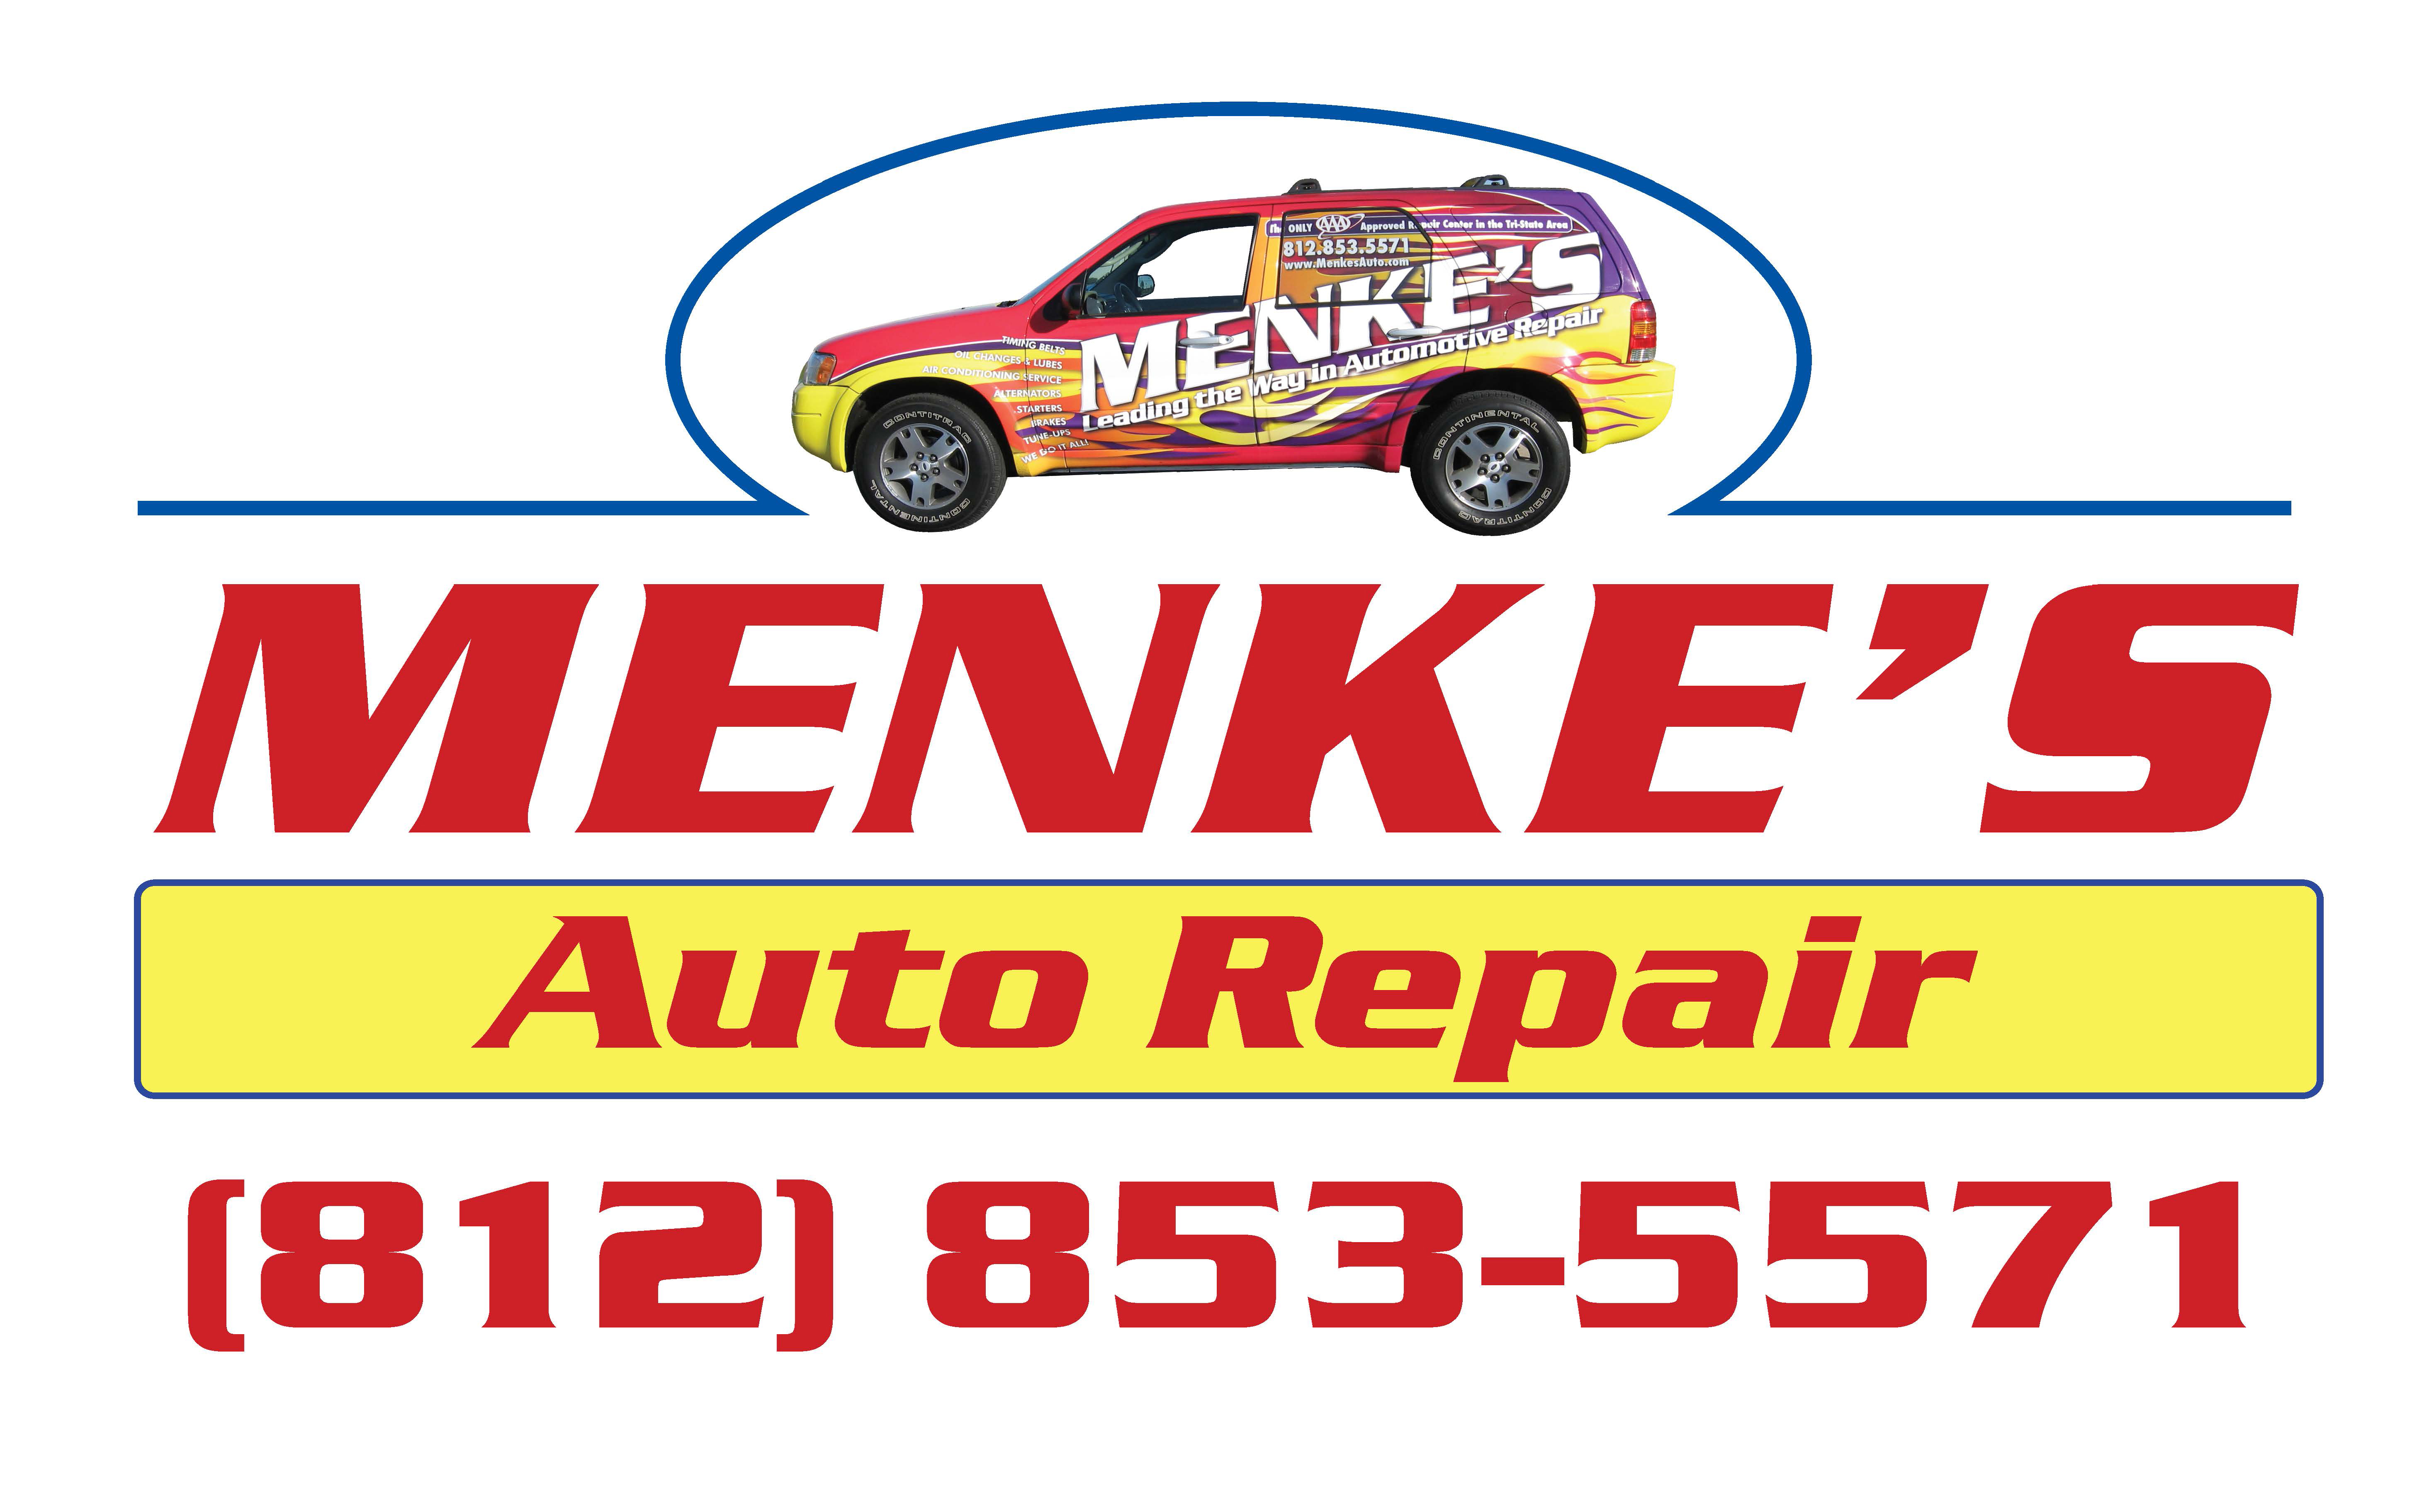 Menke's Auto Repair